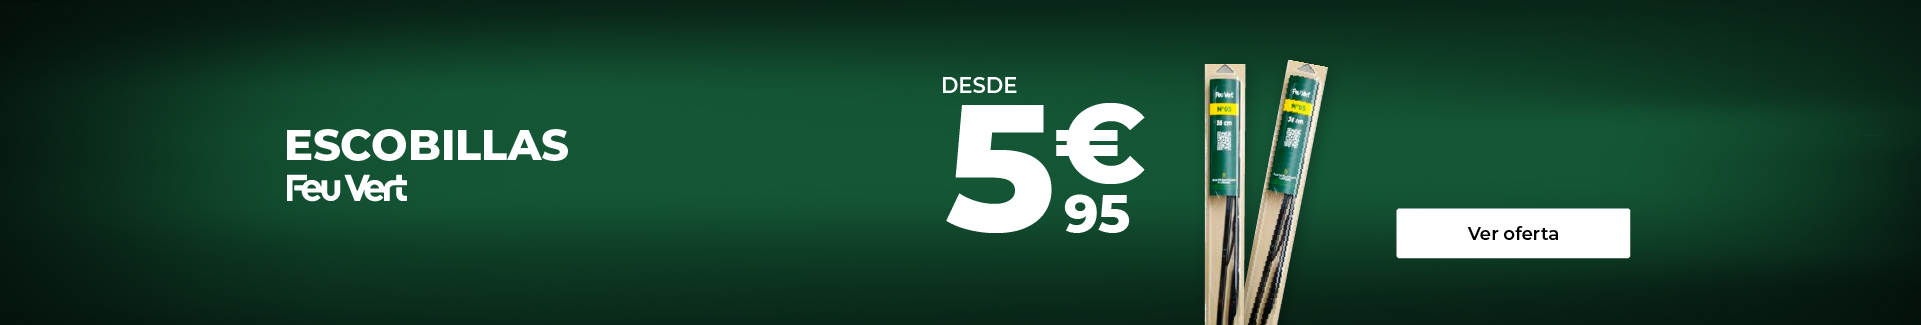 ESCOBILLAS FEU VERT DESDE 5,95 €